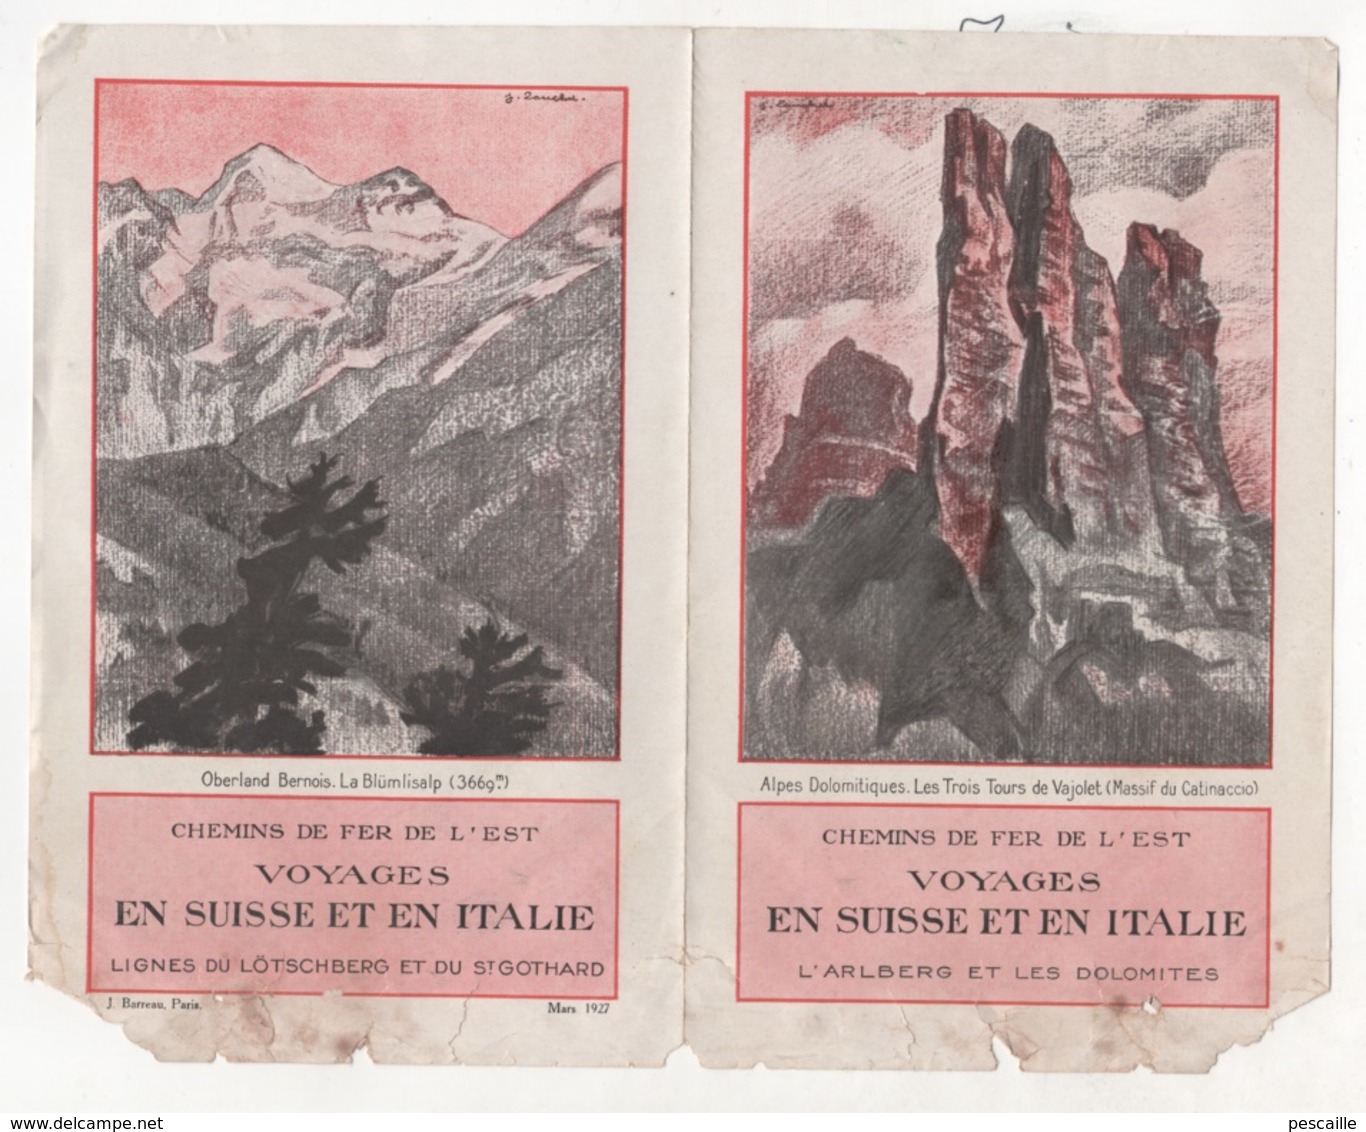 DEPLIANT CHEMINS DE FER DE L'EST VOYAGES EN SUISSE ET EN ITALIE - L'ARLBERG ET LES DOLOMITES - L'ENGADINE - 1927 - Dépliants Turistici